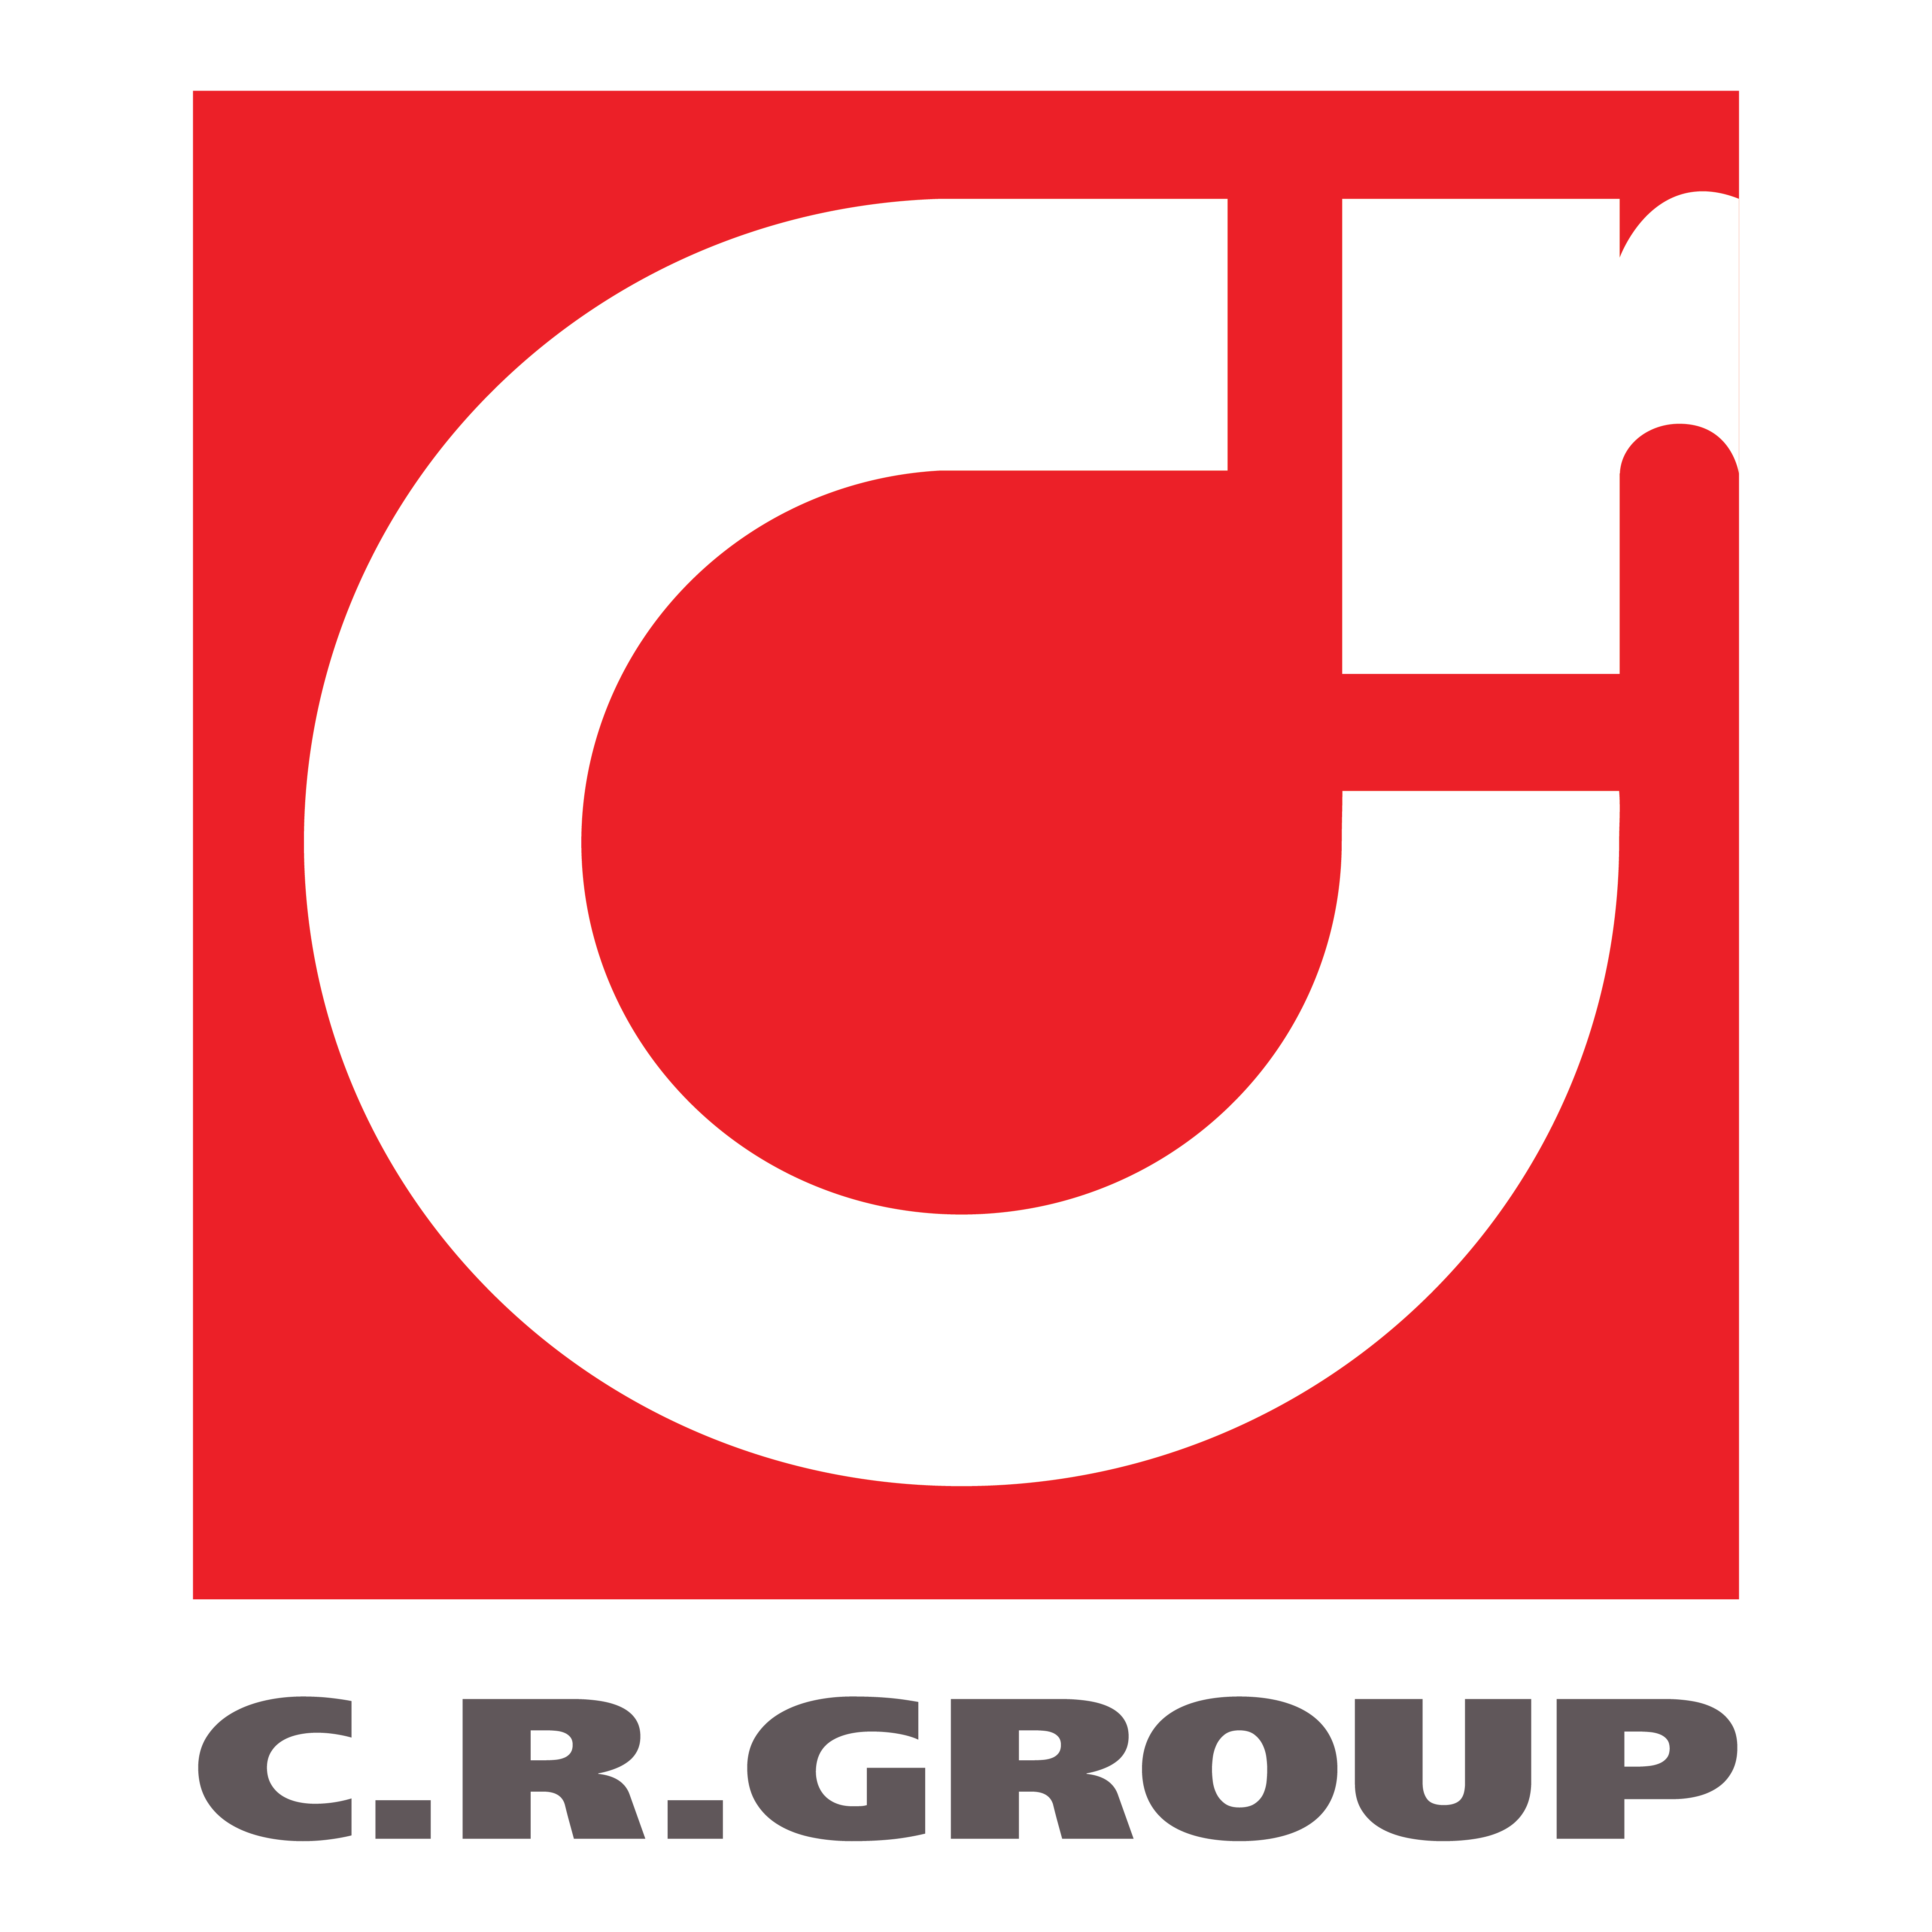 C.R.Group